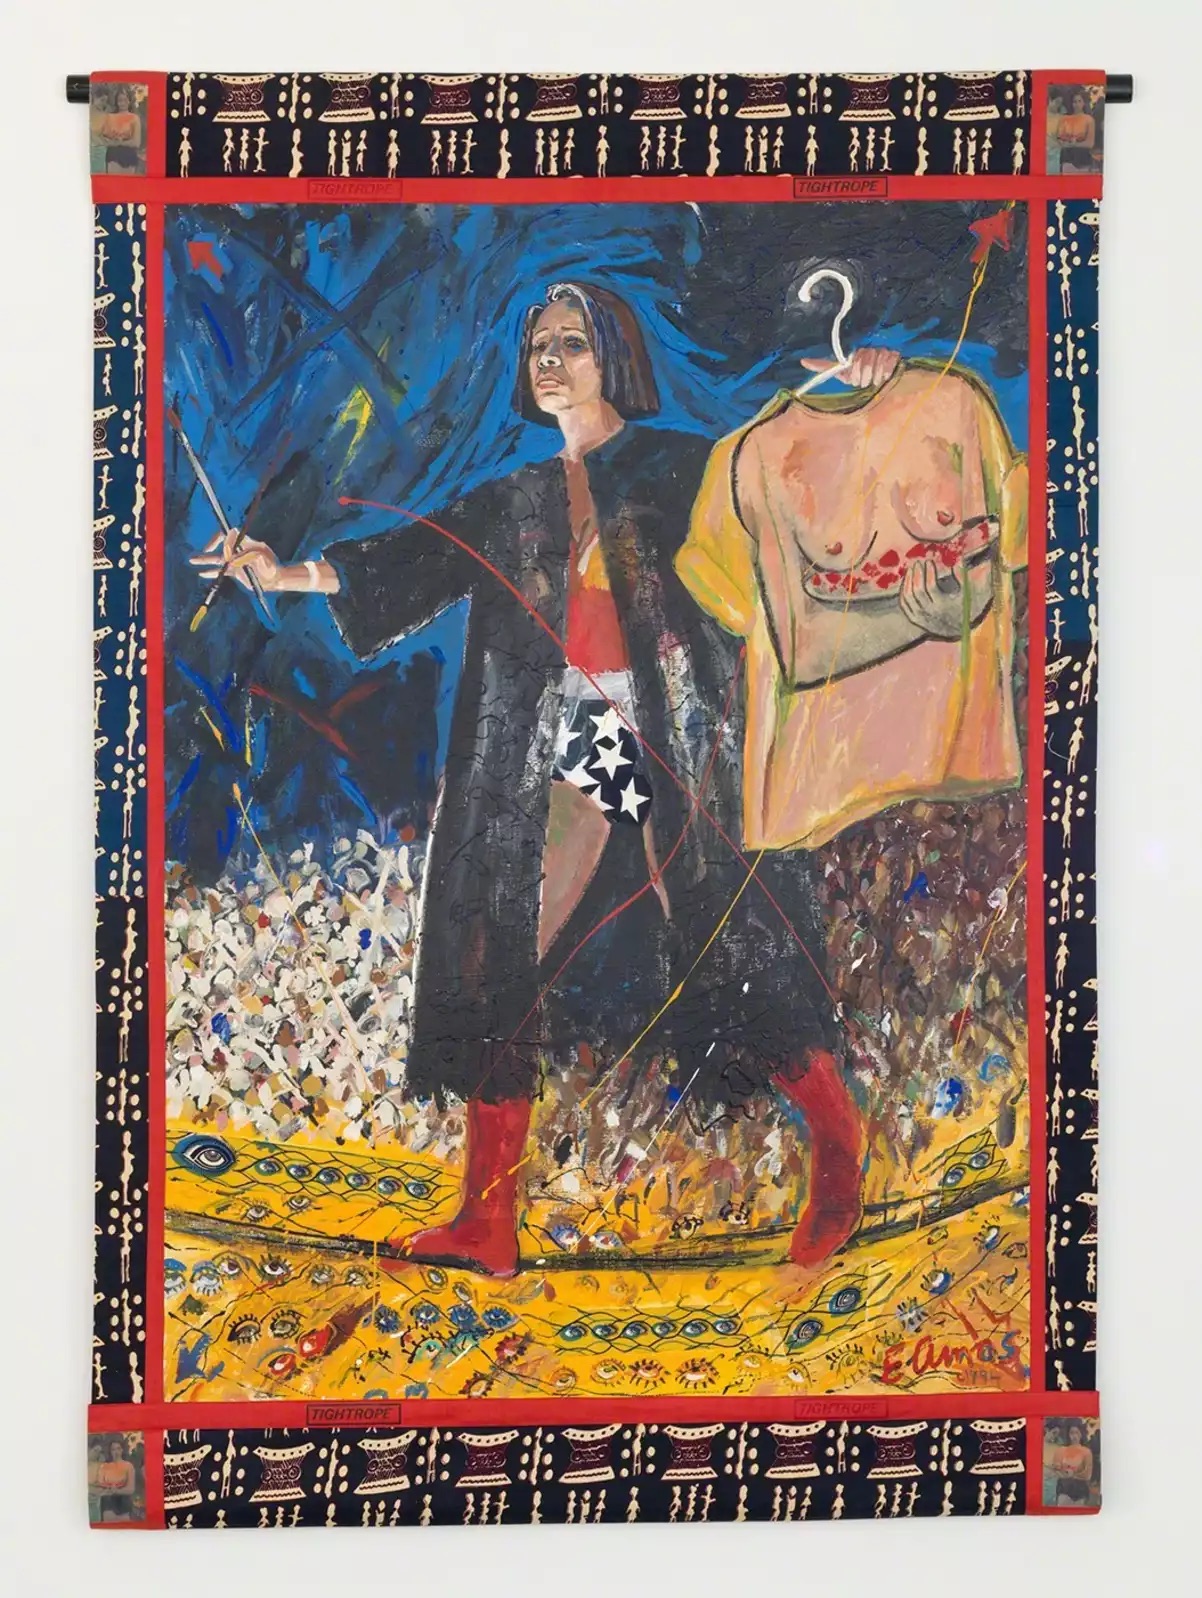 Emma Amos, Tightrope, 1994, Ryan Lee Gallery, New York, NY, USA. Artsy.